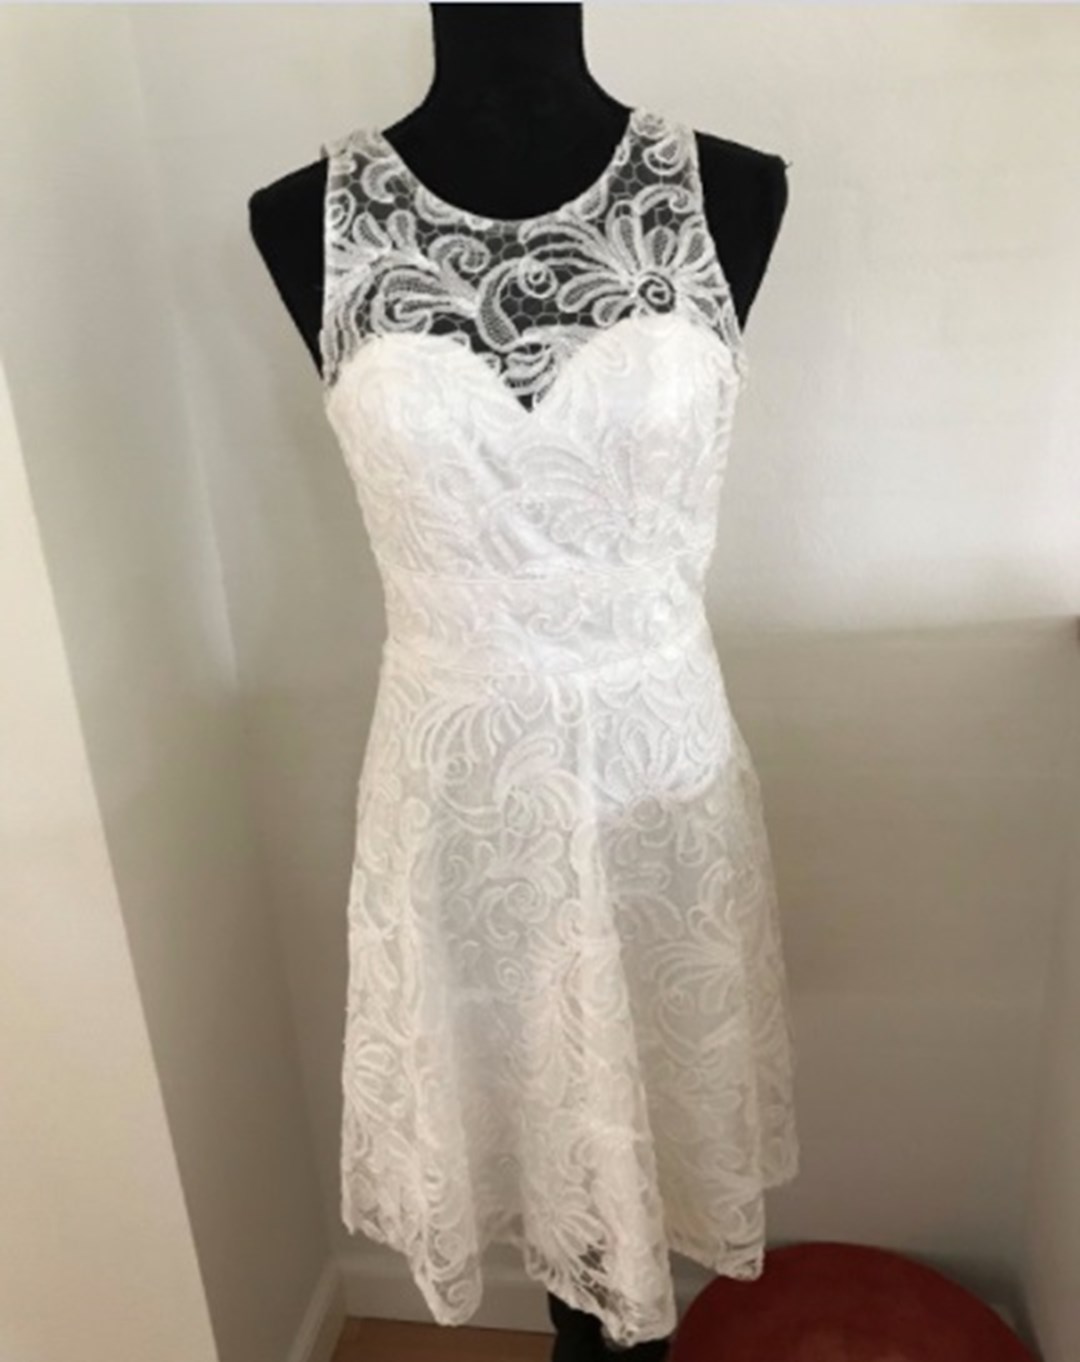 Kjolen er sat til salg af Maria fra Slagelse for 450 kroner. Du kan læse mere om kjolen og finde andre kjoler, der har samme elementer, herunder